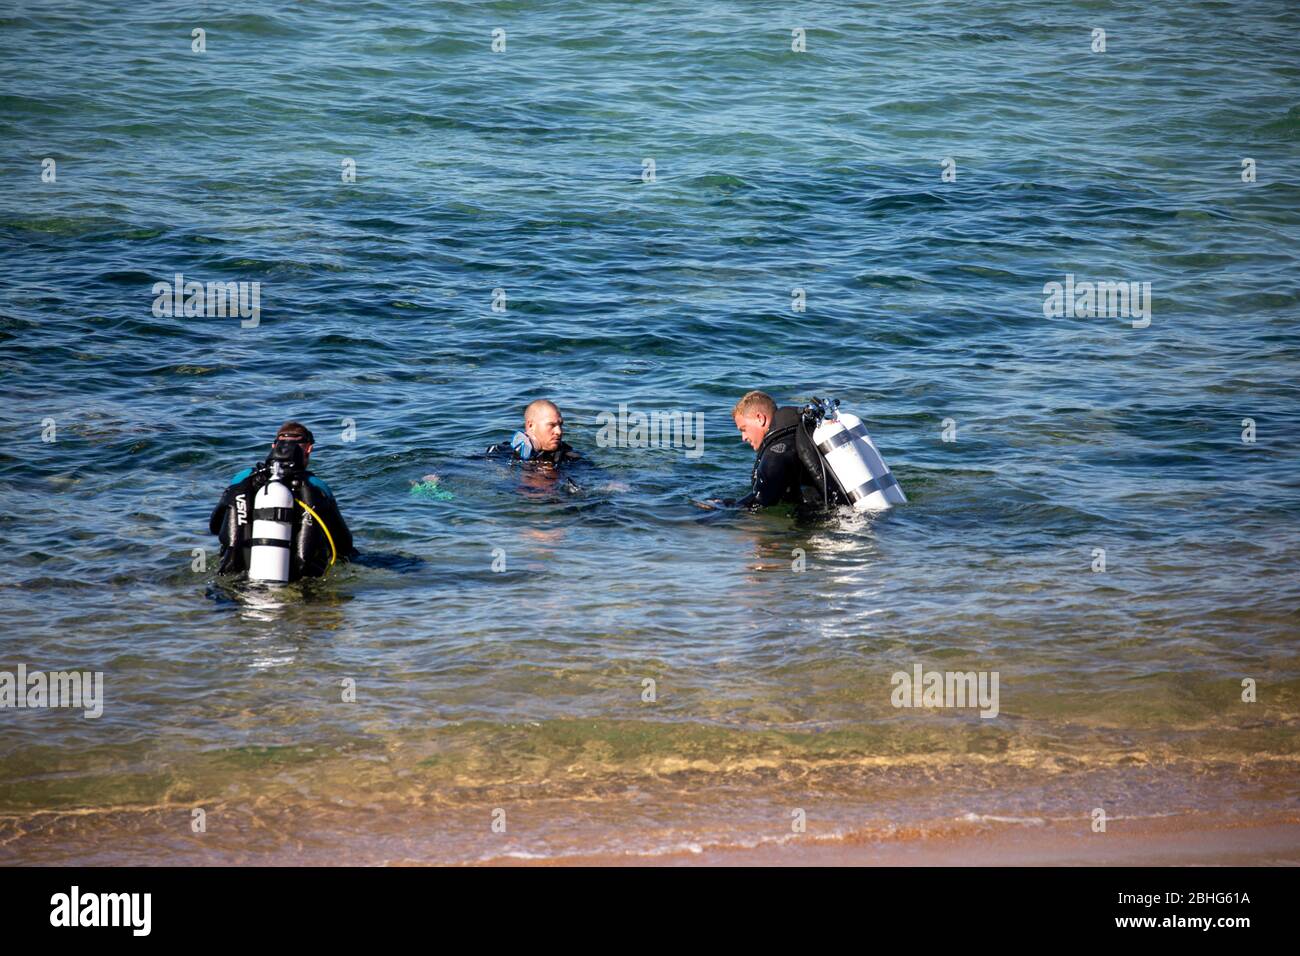 Trois hommes australiens dans l'eau se préparent à faire de la plongée sous-marine Plongée, Sydney Banque D'Images